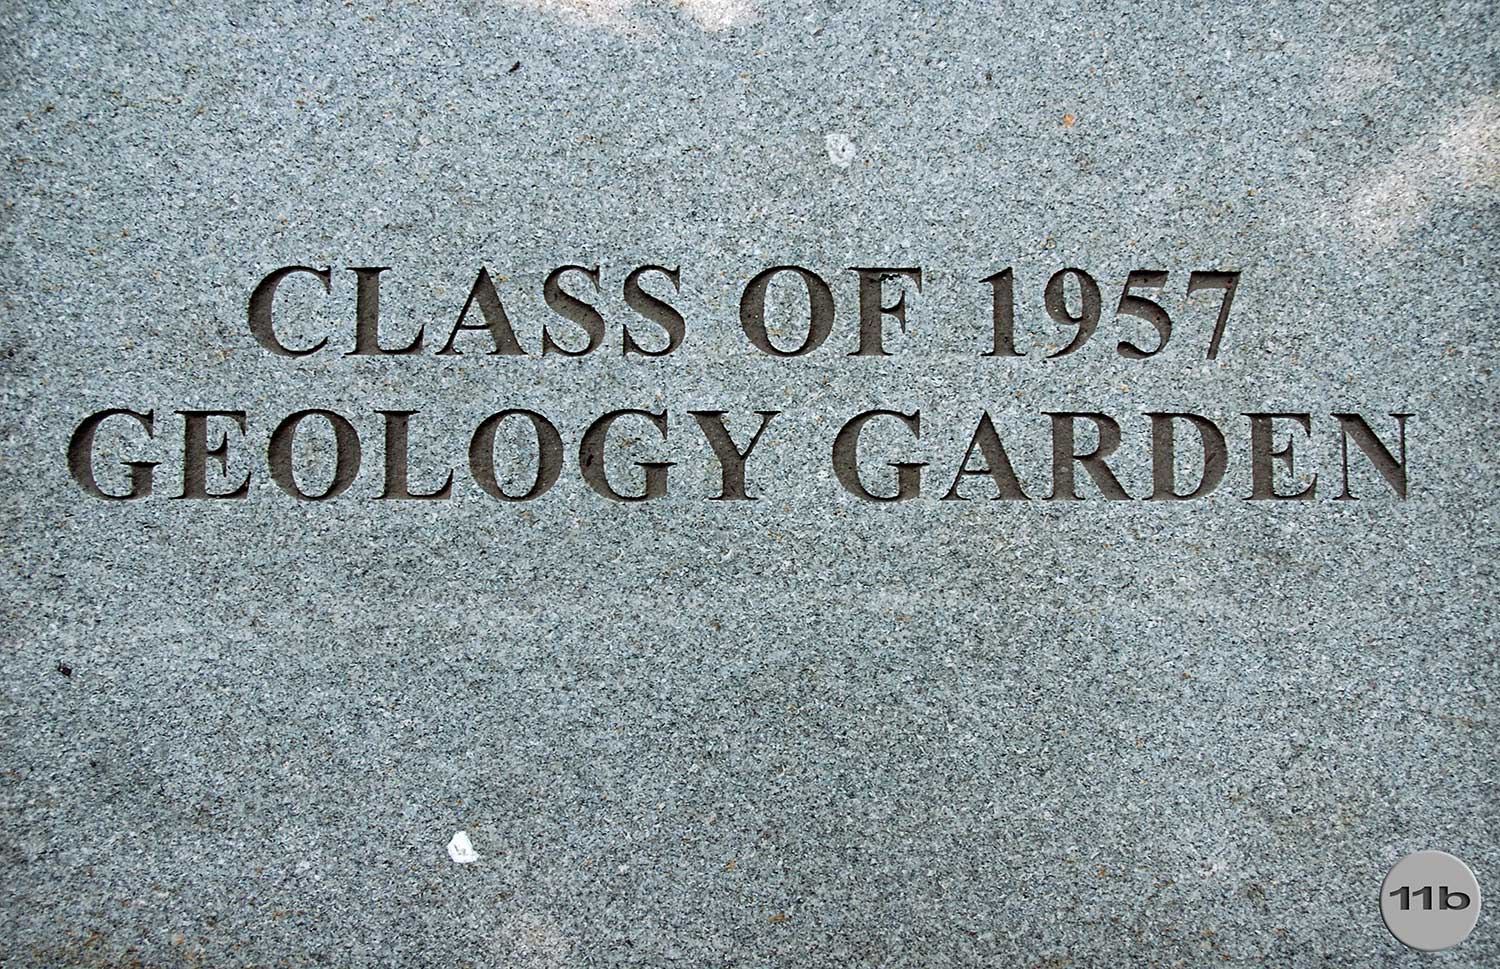 Geology Garden Class of 1957